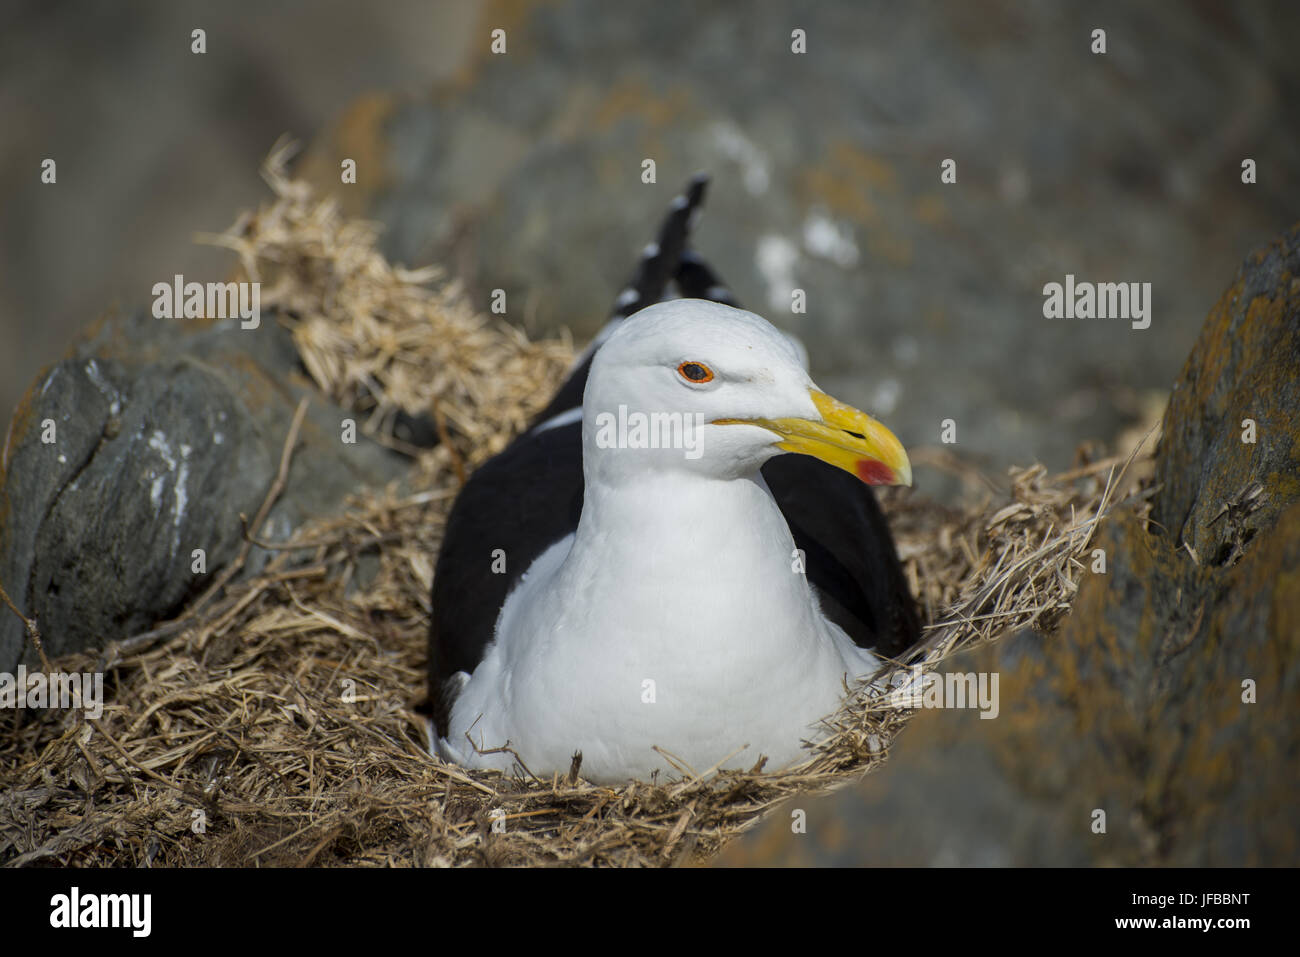 Seagull Nesting in Nest on Rocks Stock Photo